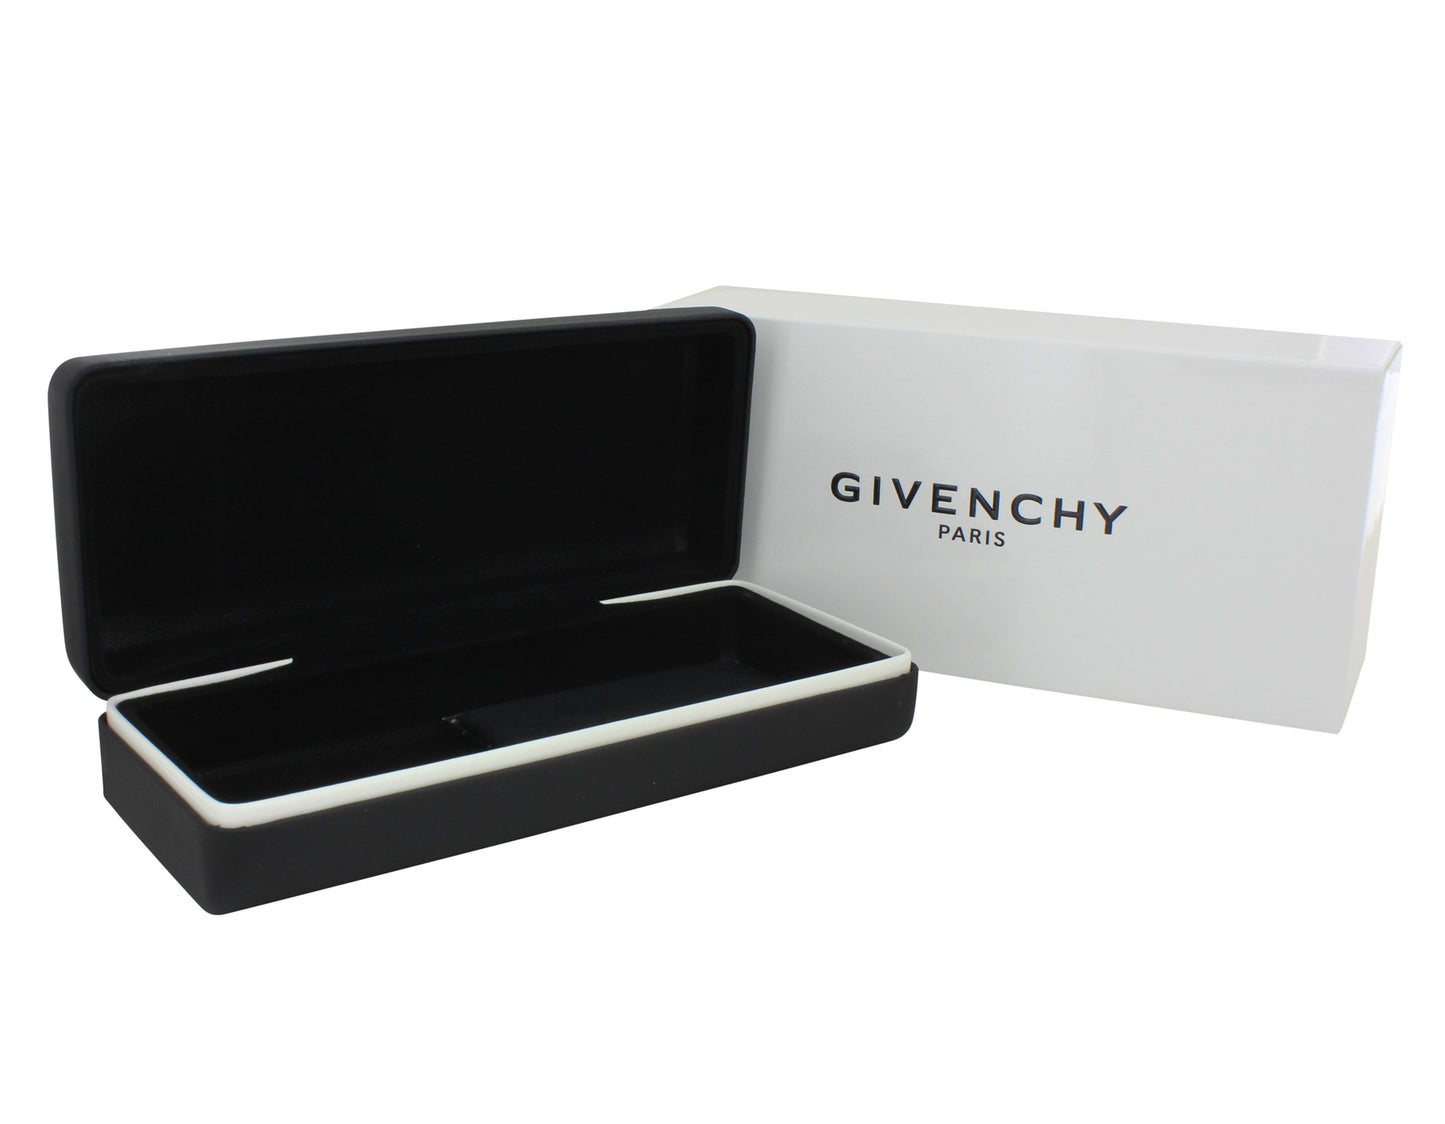 Givenchy GV0033-86 51mm New Eyeglasses